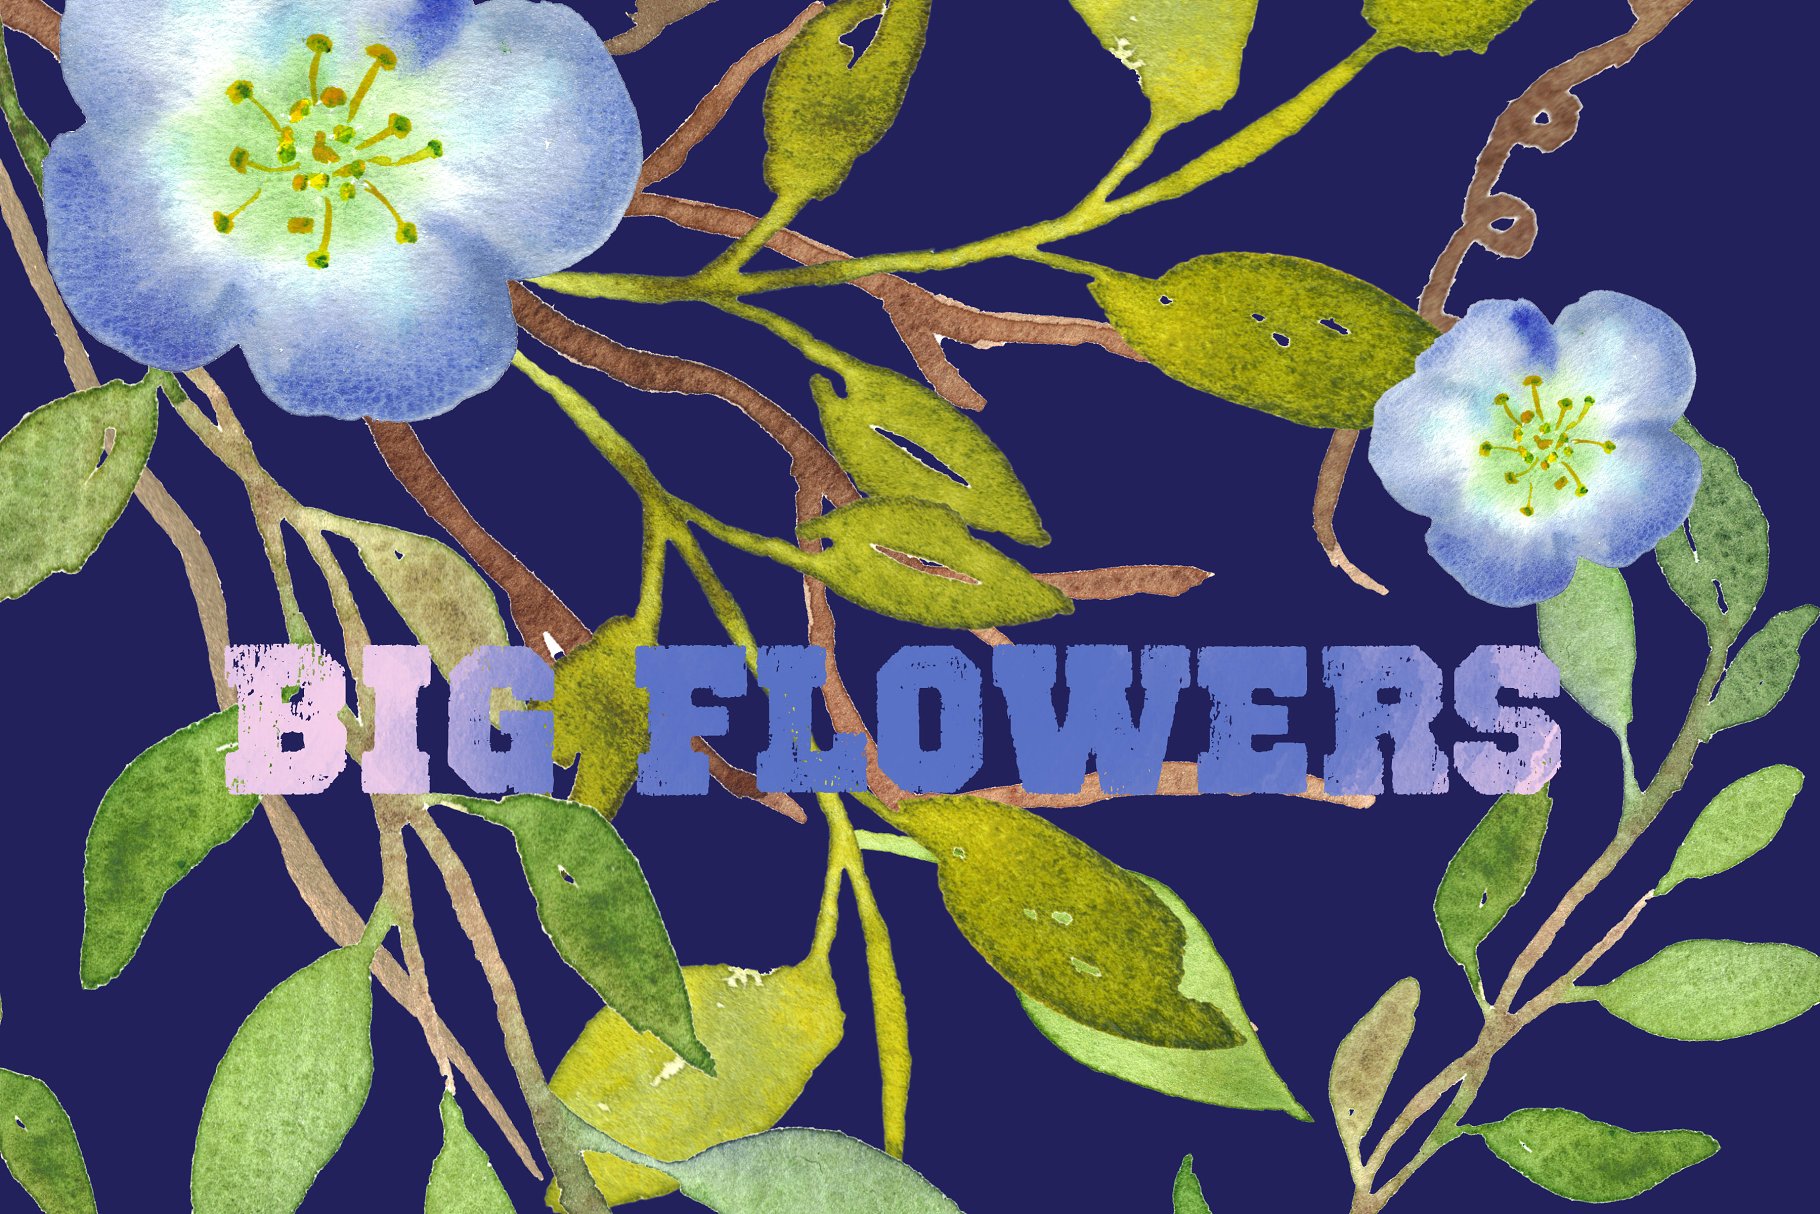 水彩手绘花卉艺术剪贴画设计素材 Big Flowers watercolor clipart插图2